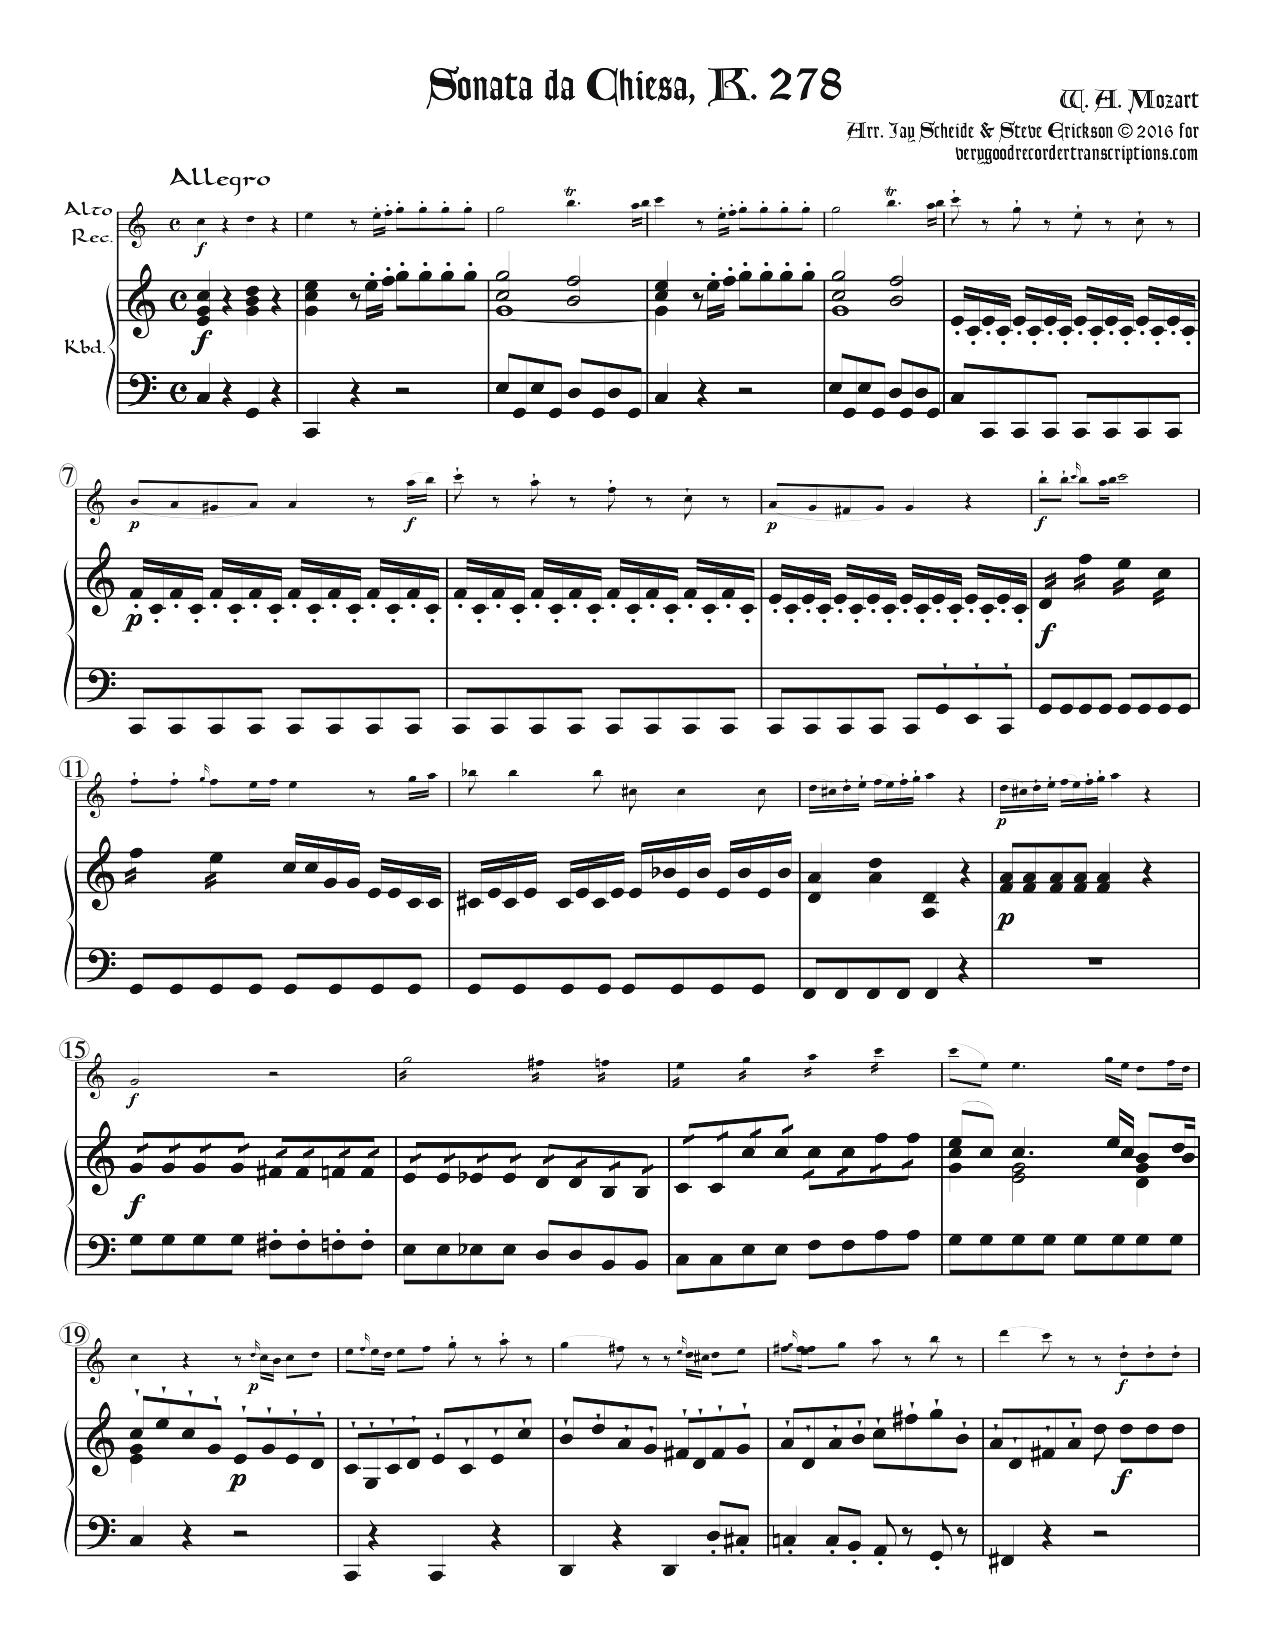 Sonata da Chiesa, K. 278, two versions